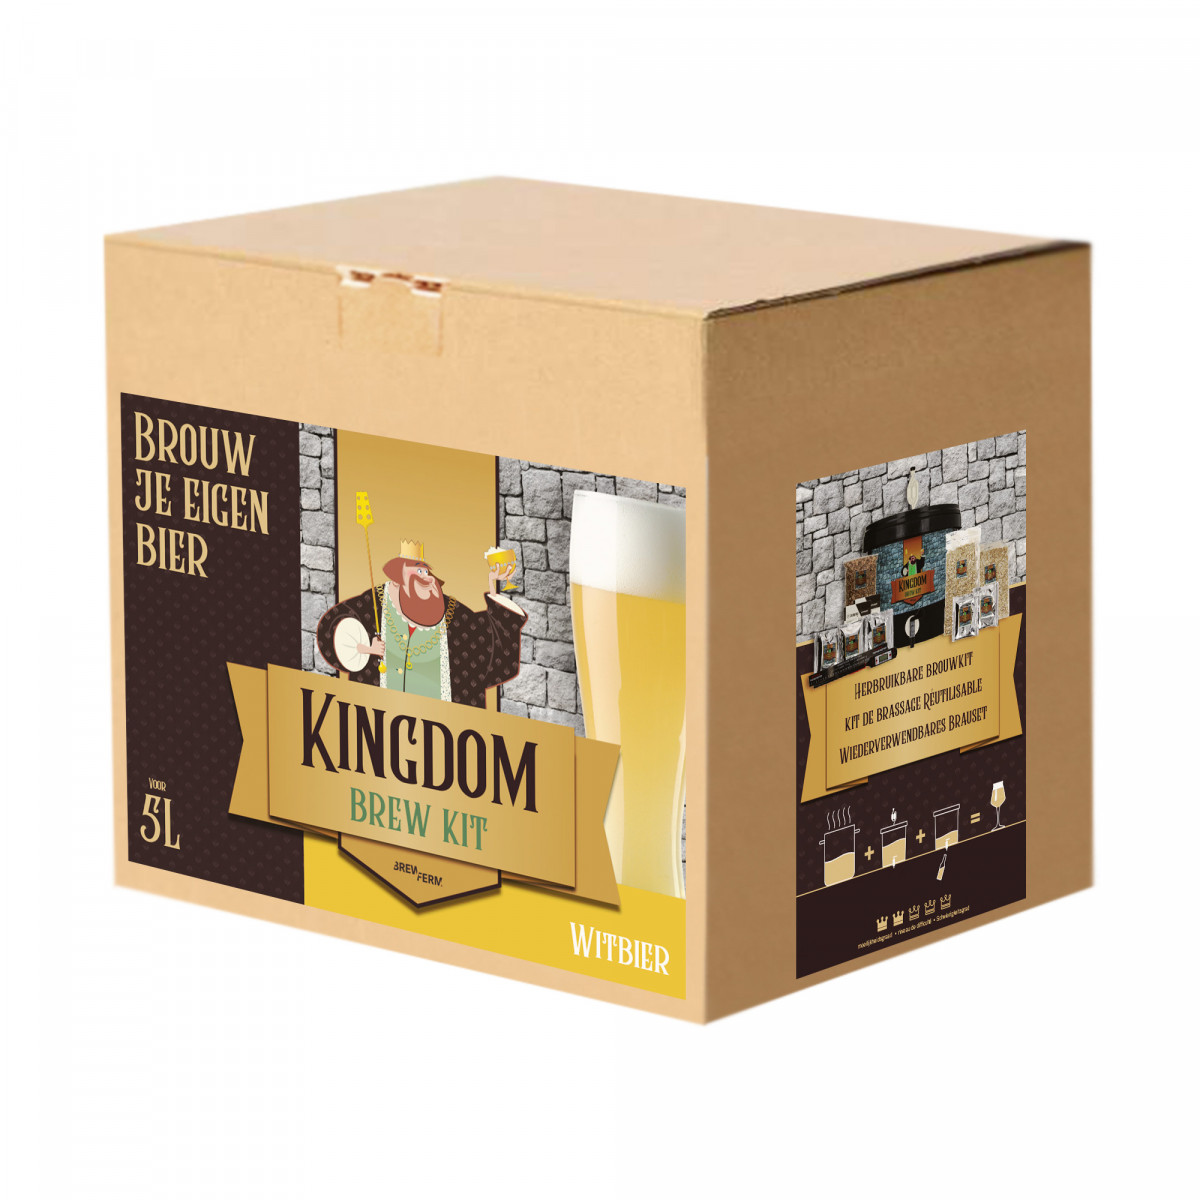 Kingdom Brew Kit - Witbier